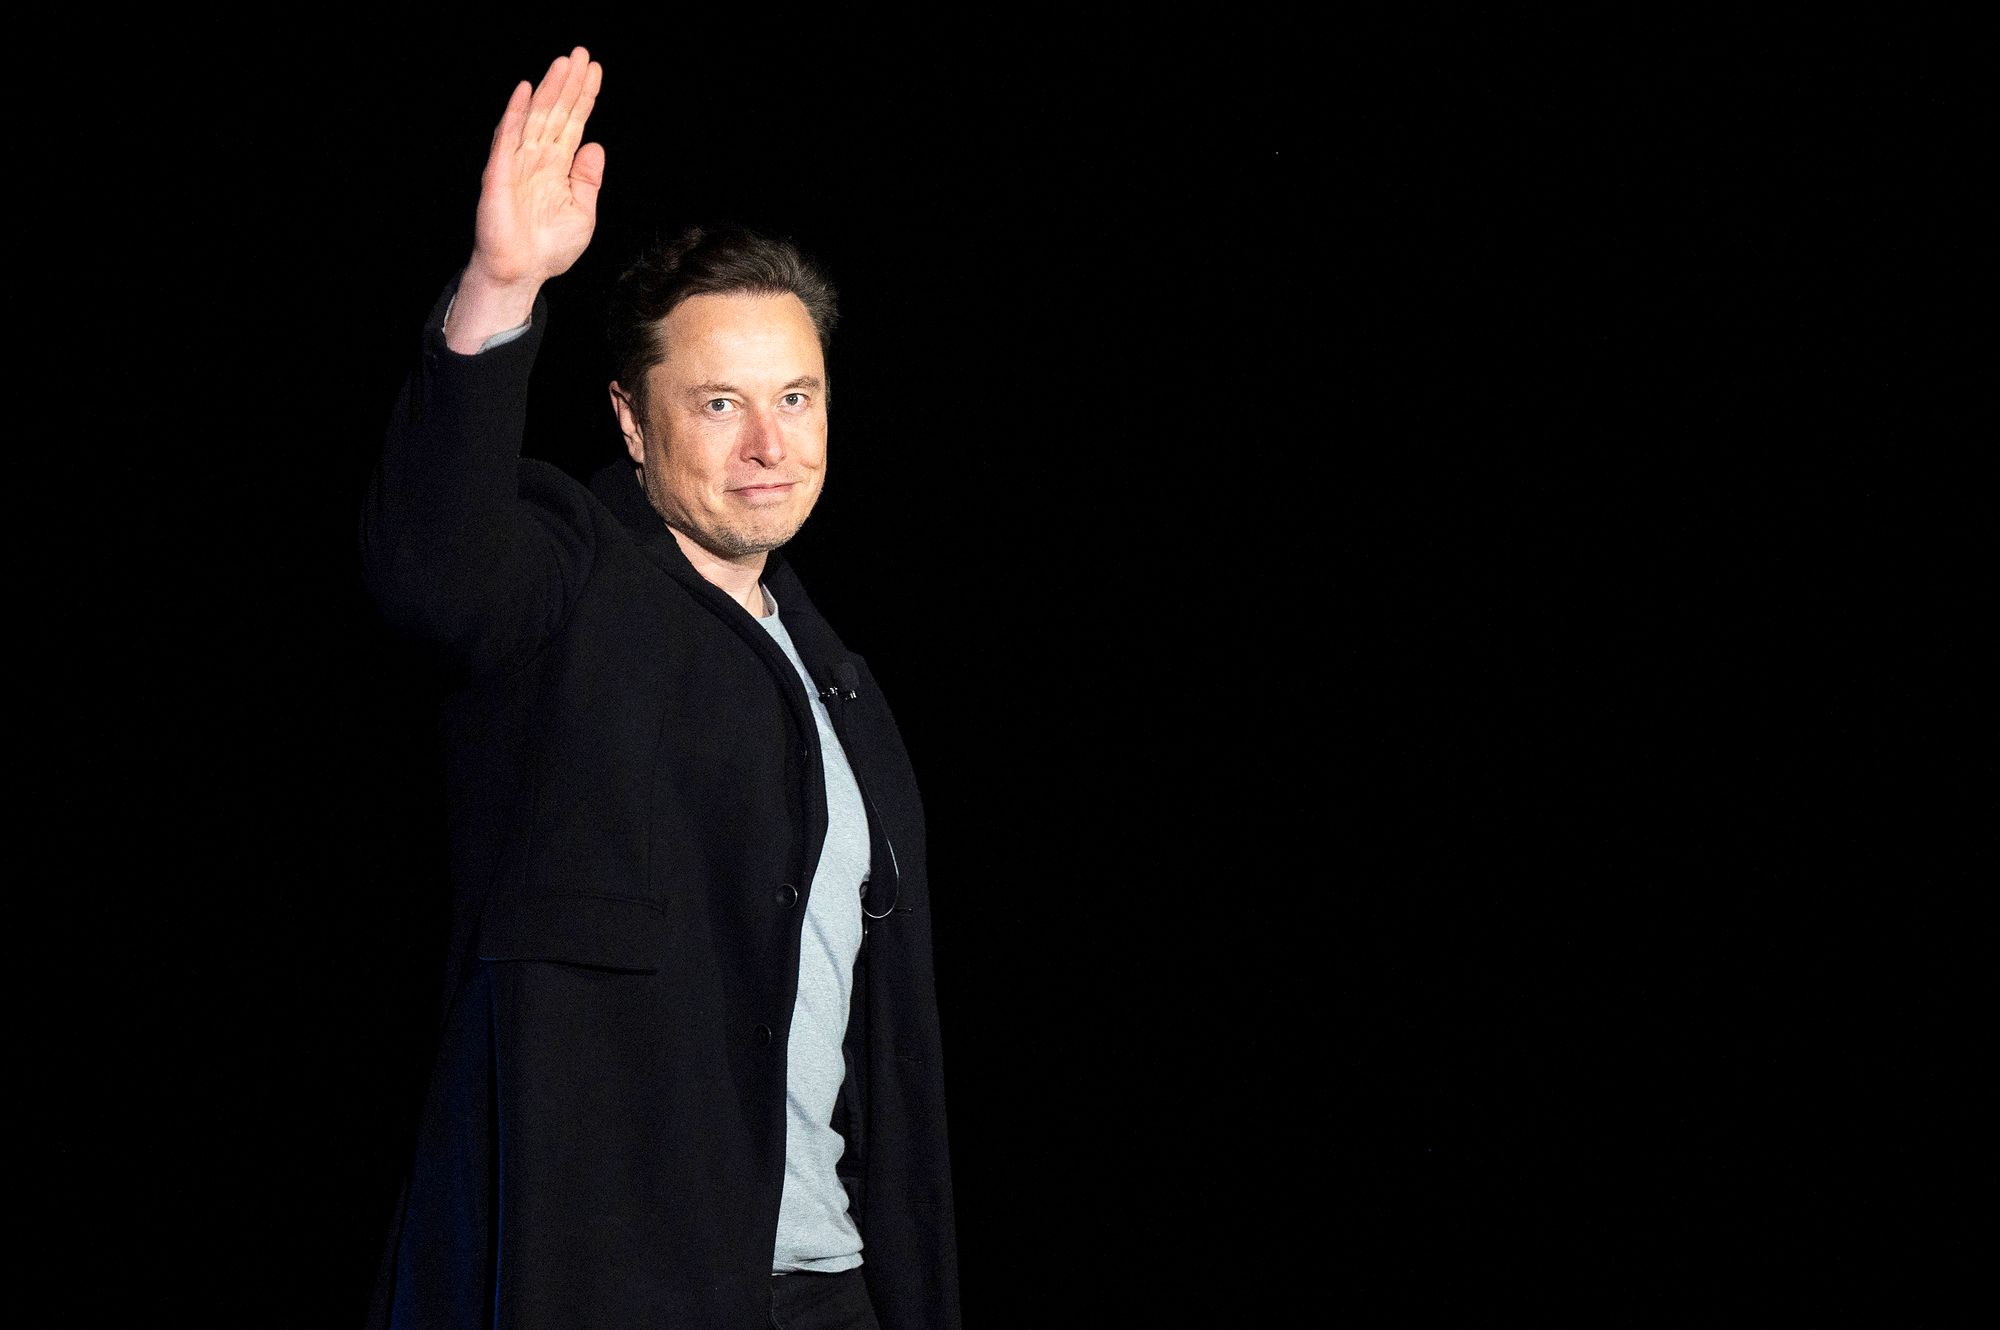 Miljardööri Elon Muskin rakettiyhtiö SpaceX lähetti helmikuussa 2018 avaruuteen Tesla Roadster -auton. © JIM WATSON / AFP / MVPhotos